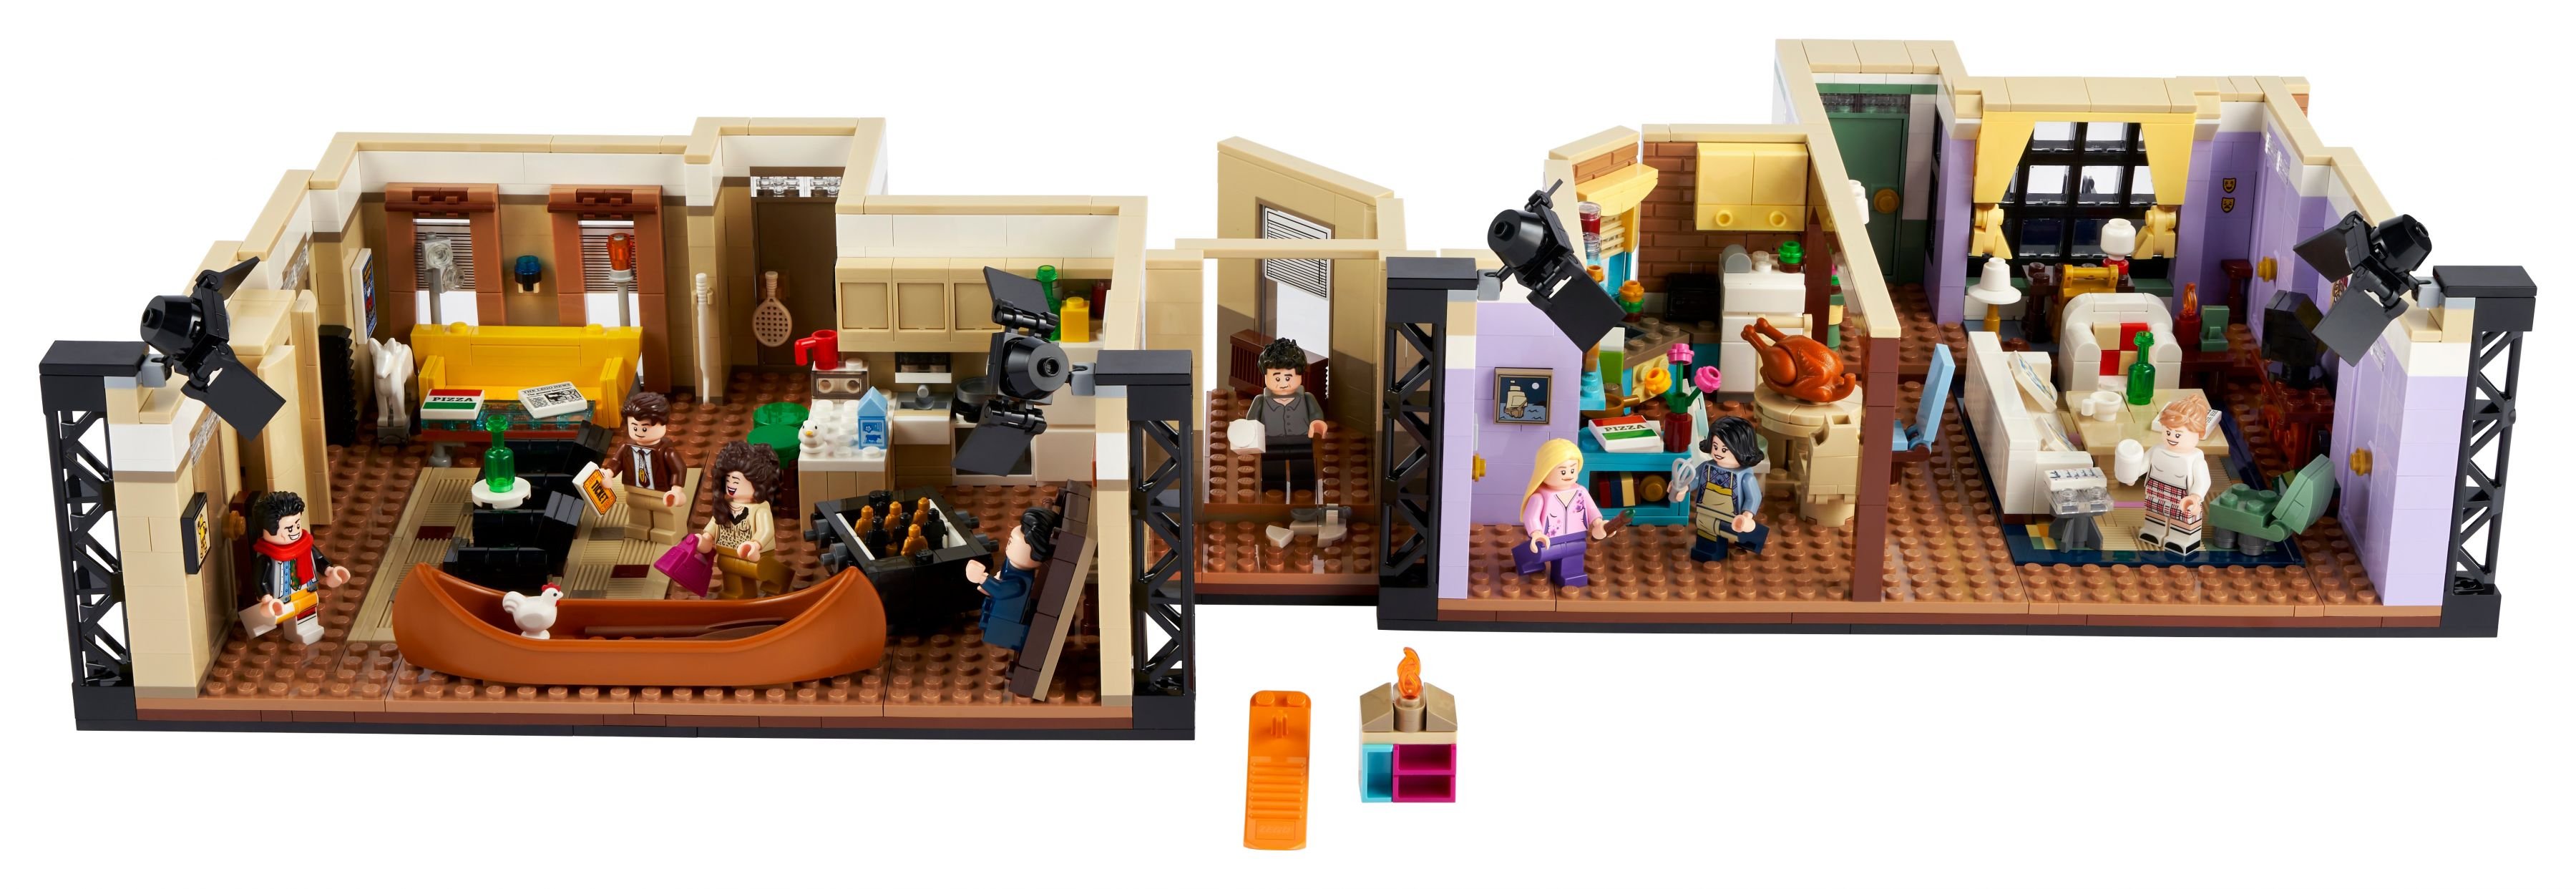 LEGO Advanced Models 10292 Friends Apartments